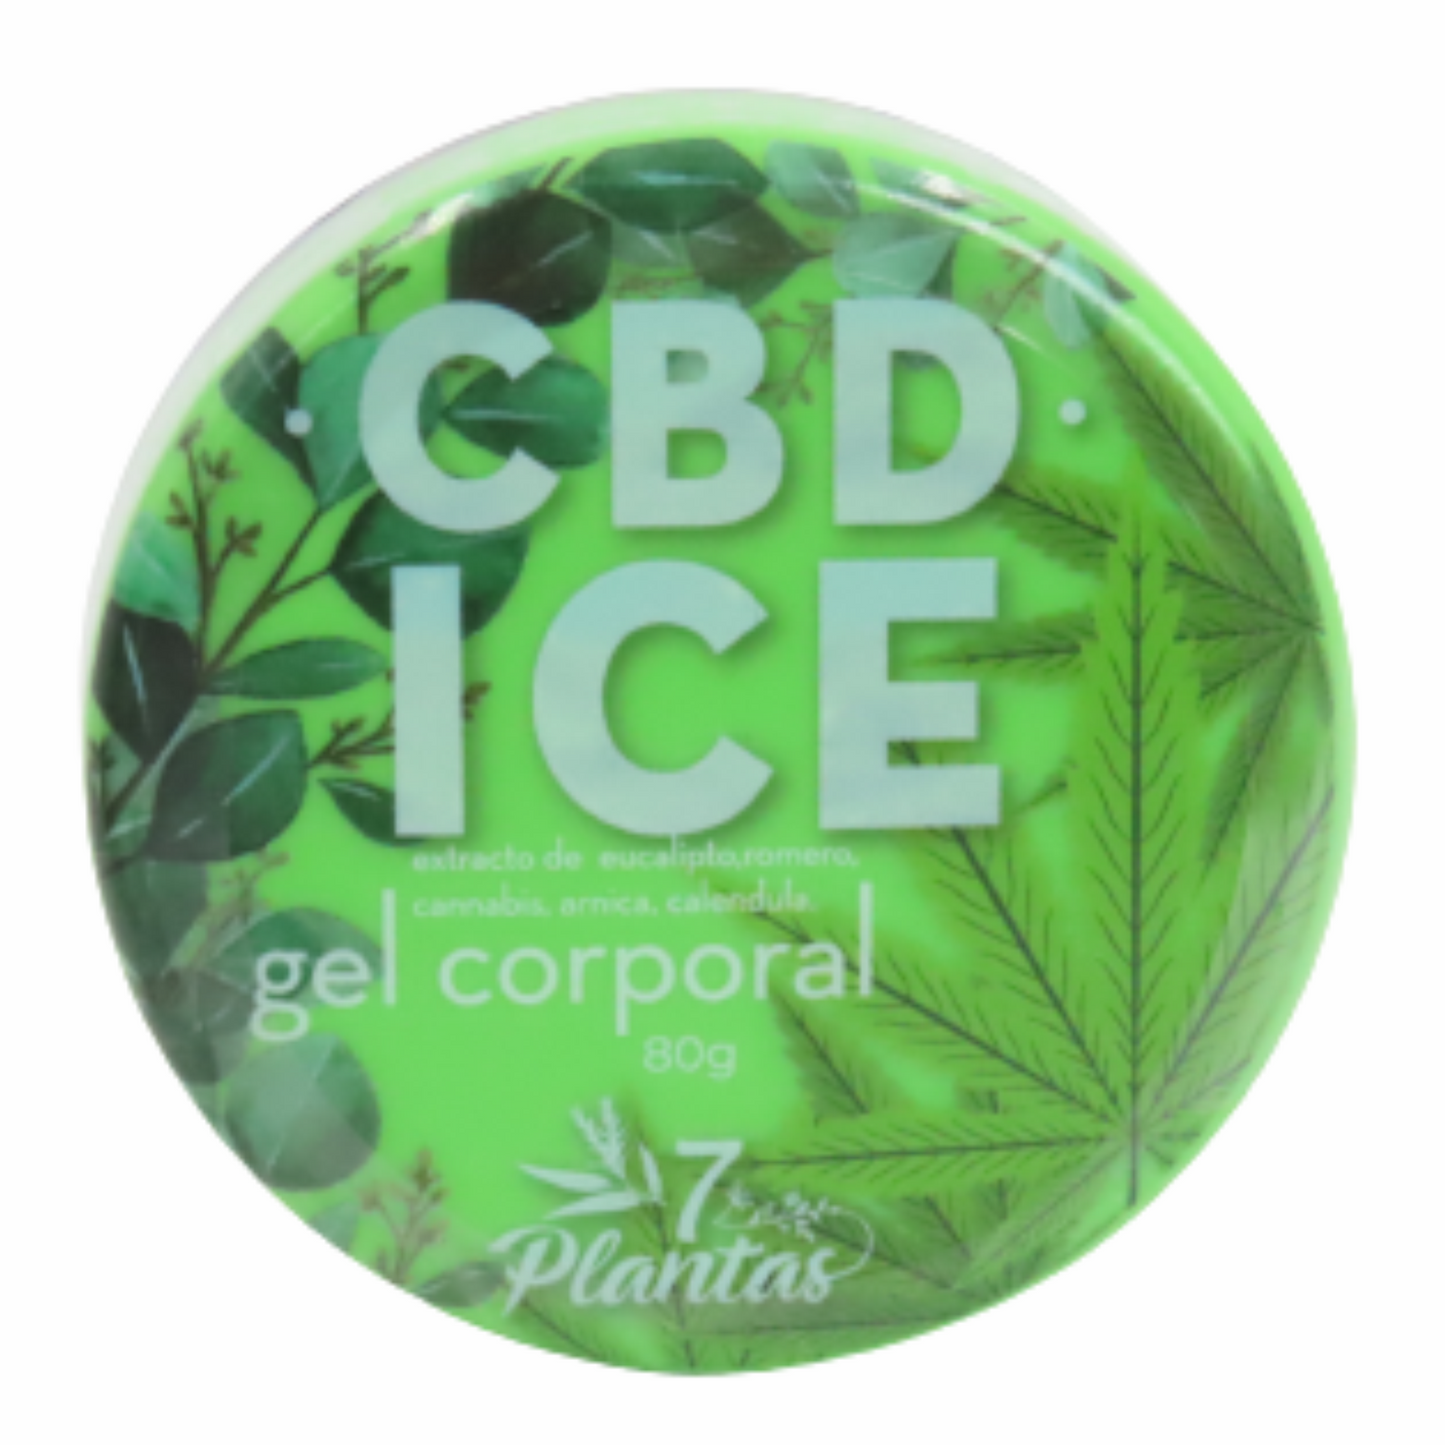 7 Plantas CBD ICE